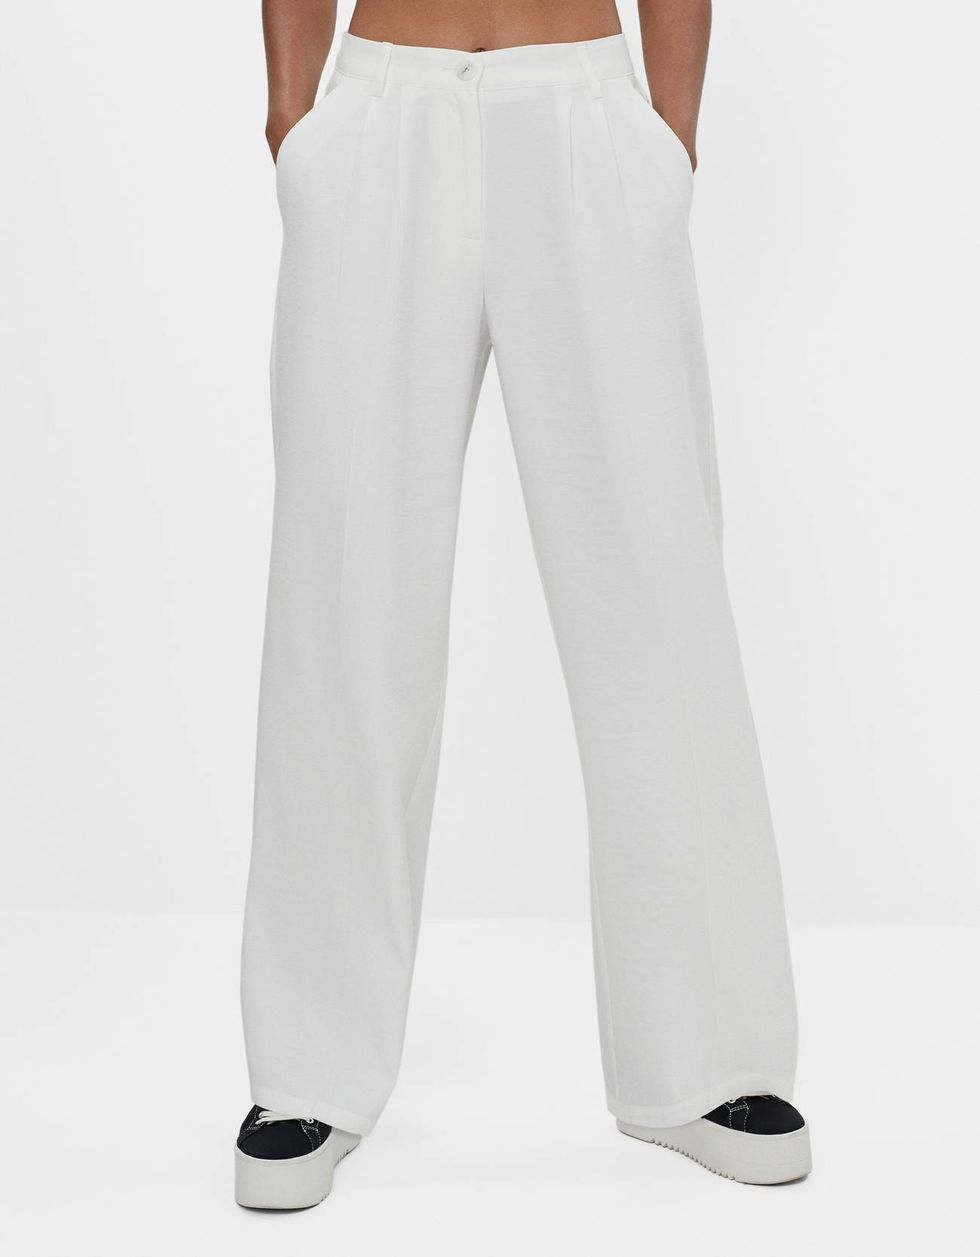 El pantalón ancho blanco de Bershka que usan las expertas de moda